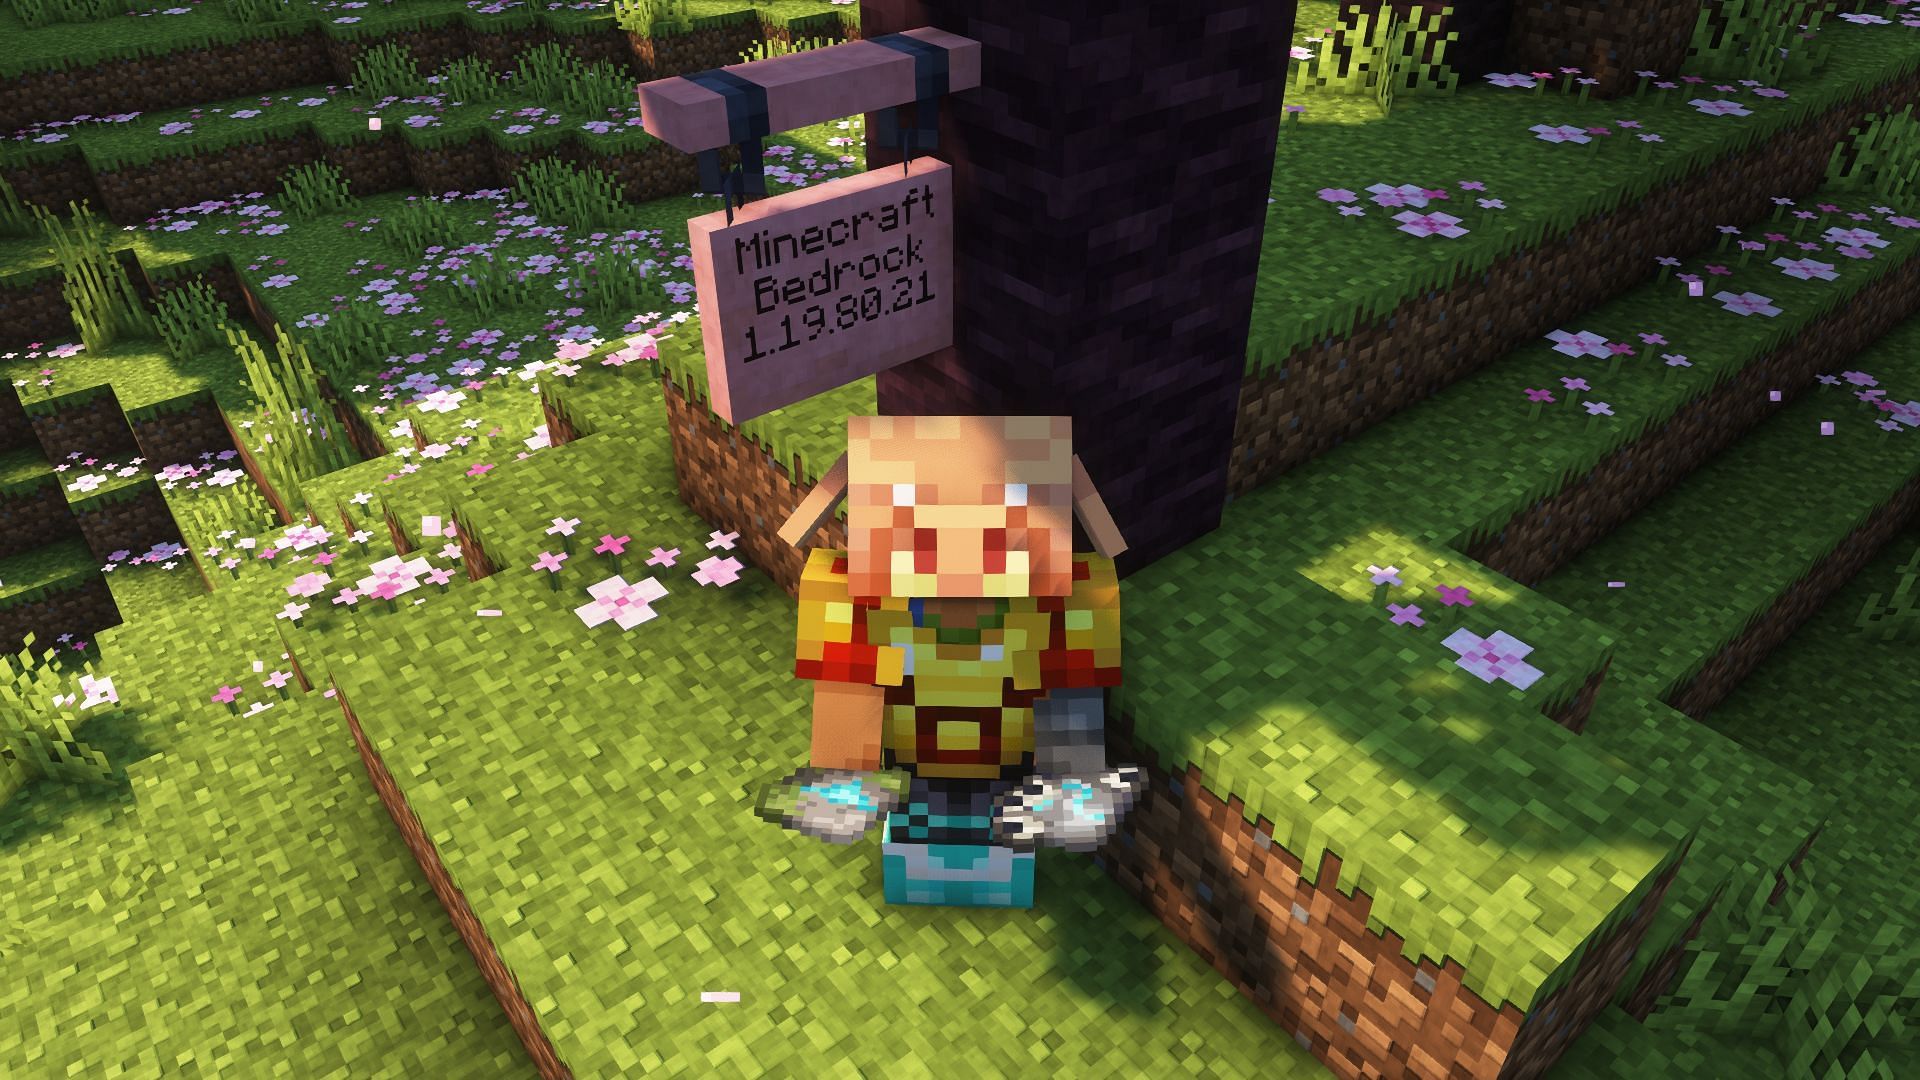 Minecraft Bedrock beta/preview 1.19.80.21 has been released (Image via Mojang)